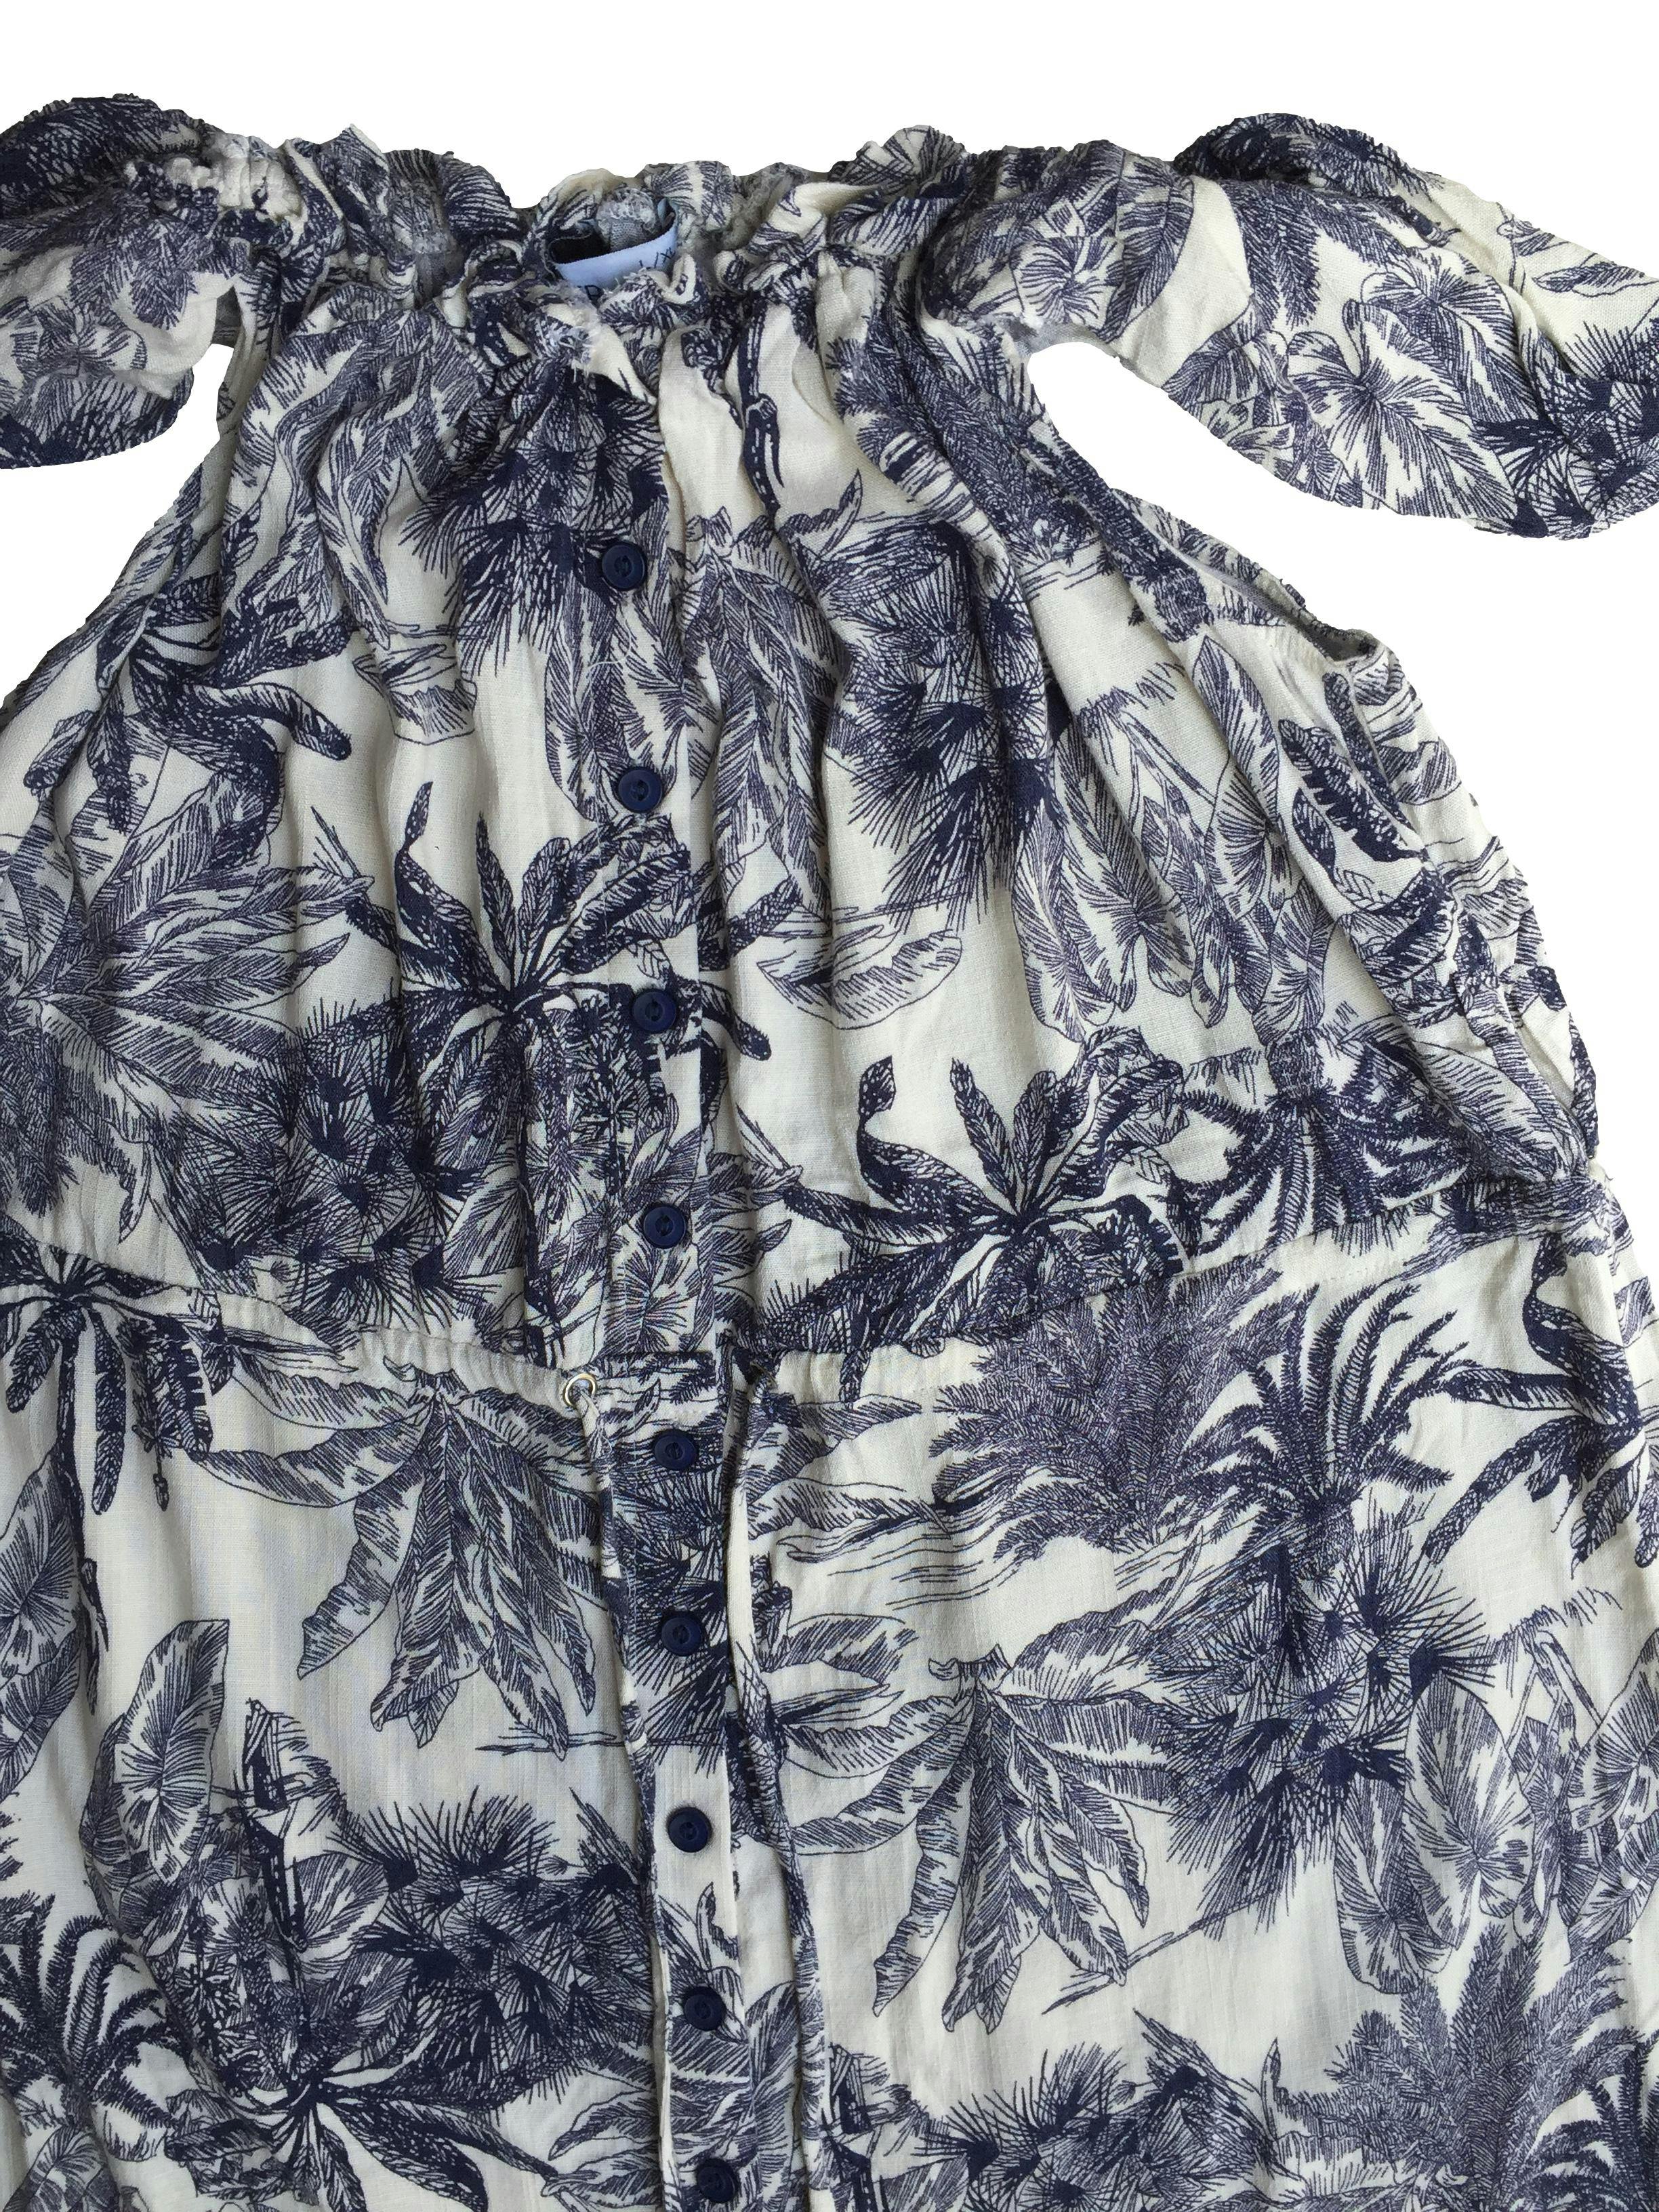 Vestido offshoulder blanco, estampado de flores azules, elástico y cordón en la cintura, botones delanteros. Busto: 100cm, Largo: 120cm